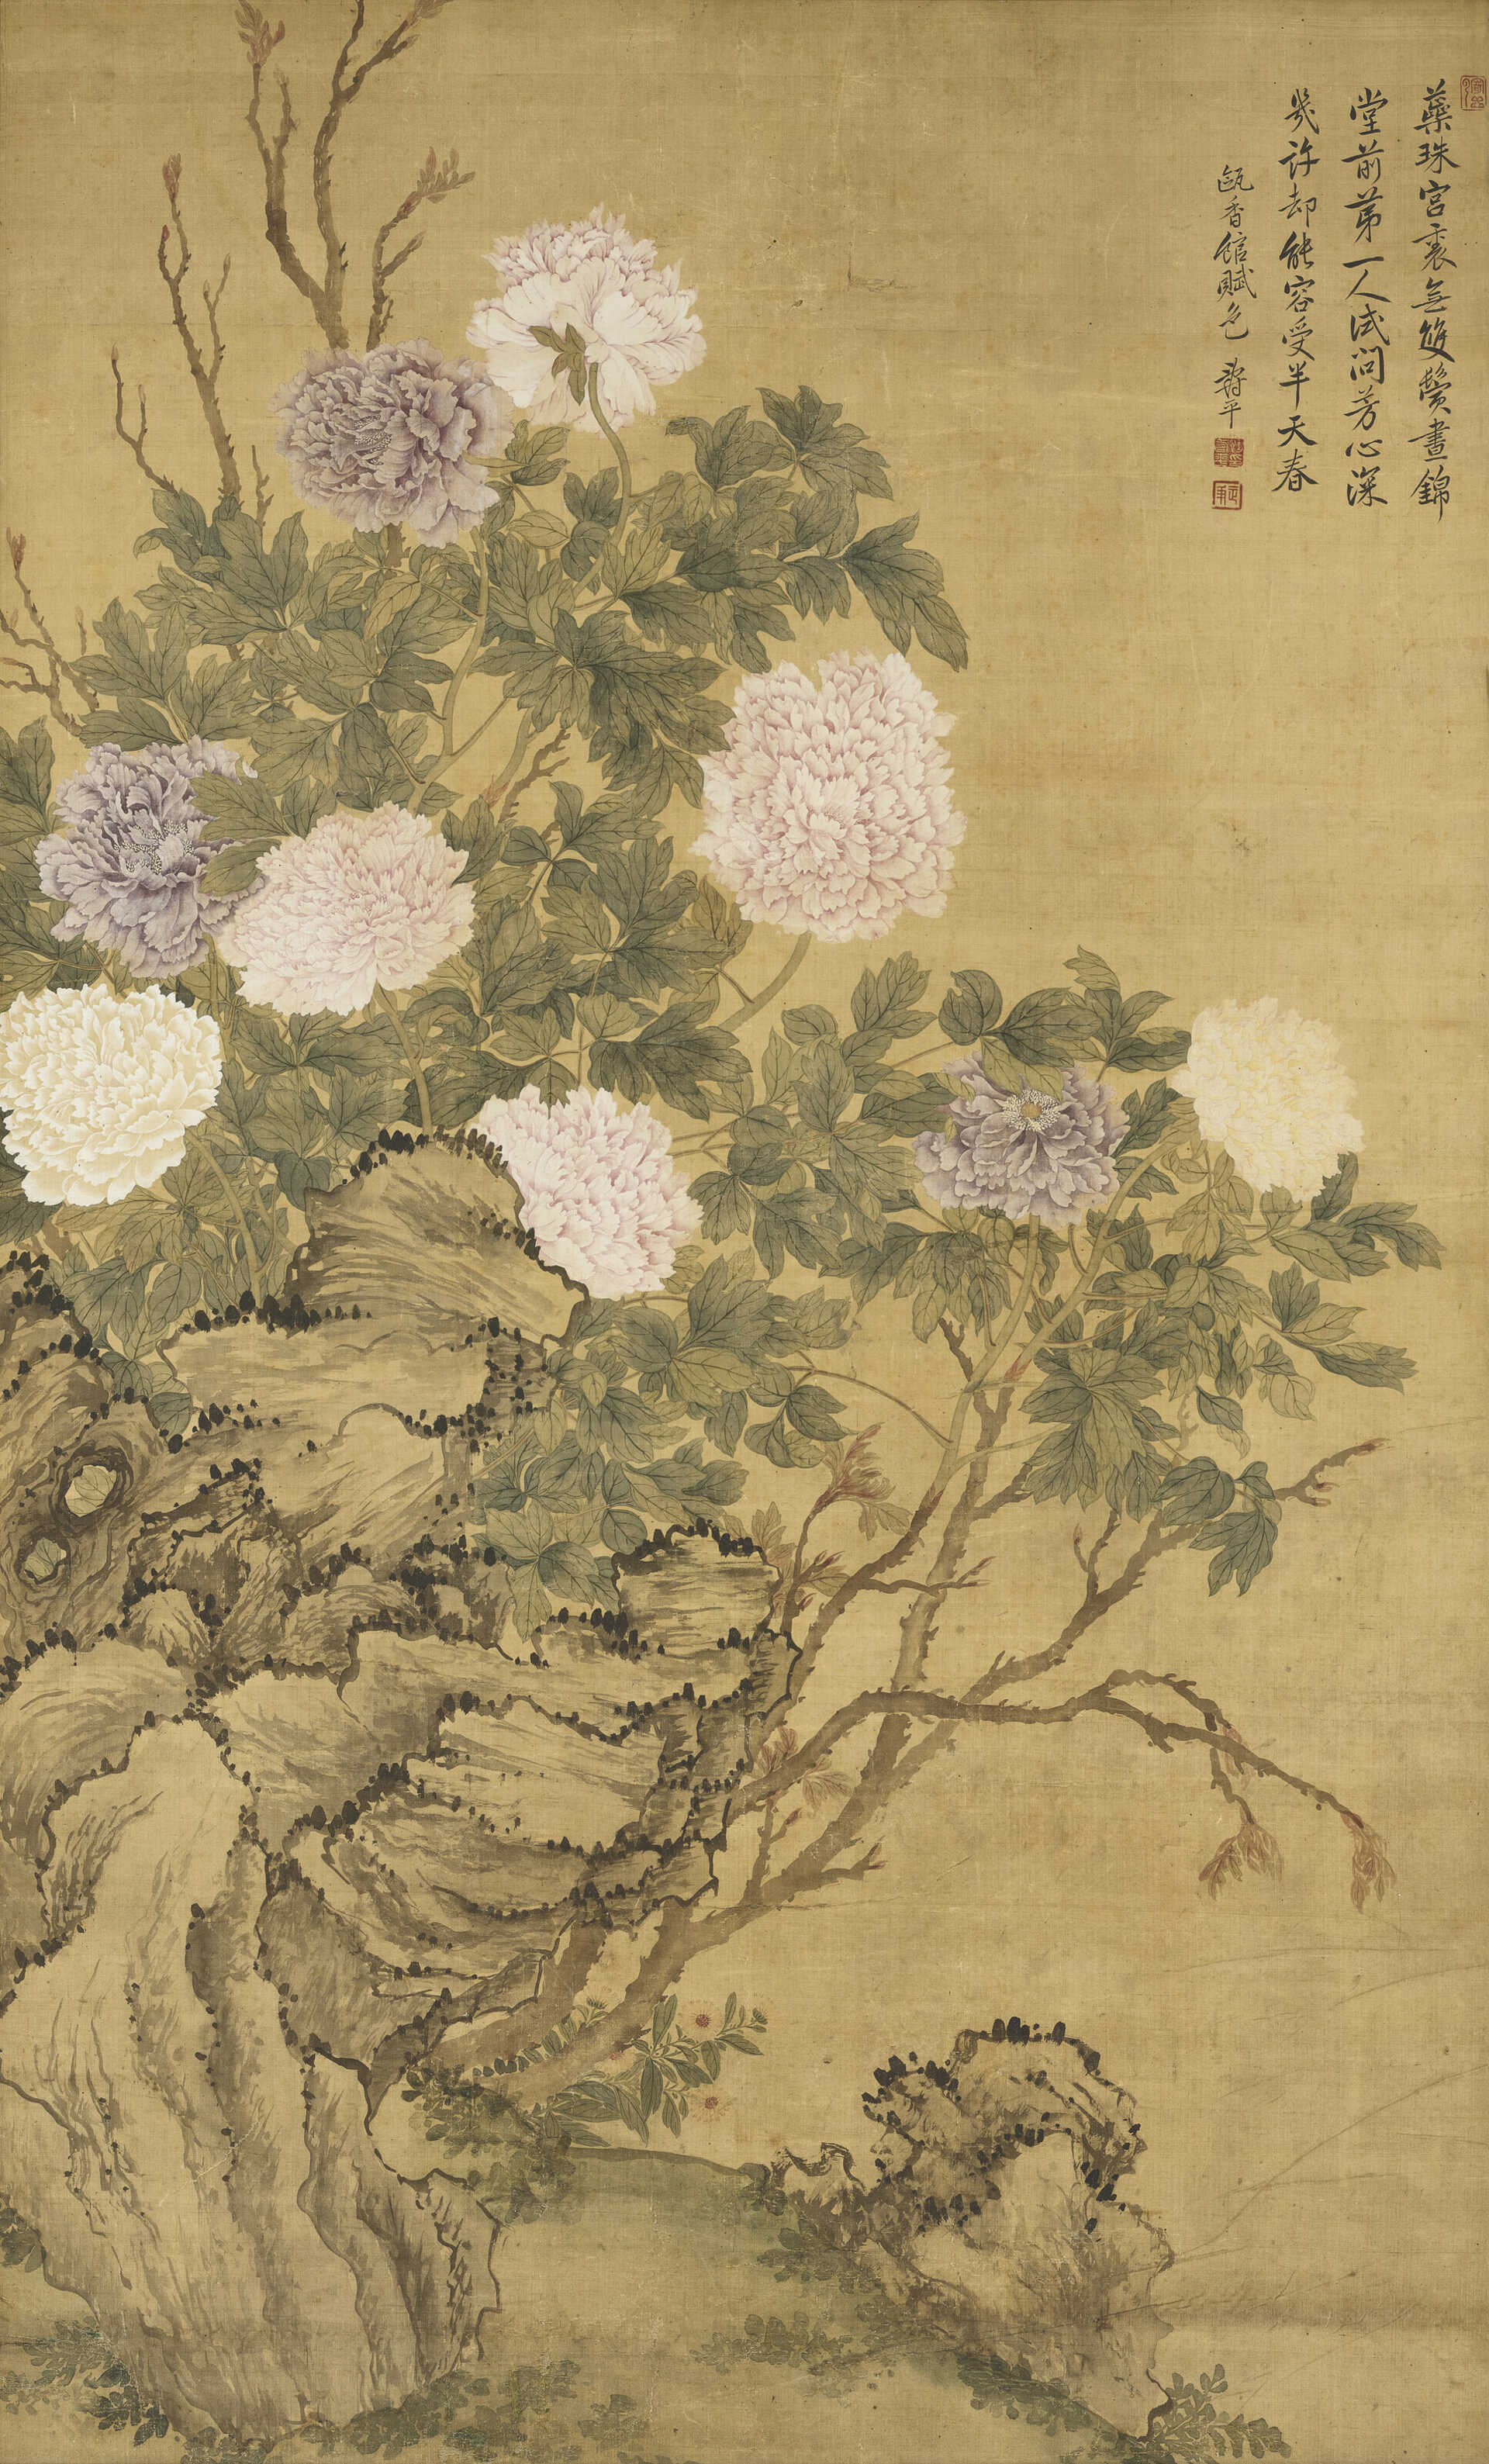 YUN SHOUPING (1633-1690)